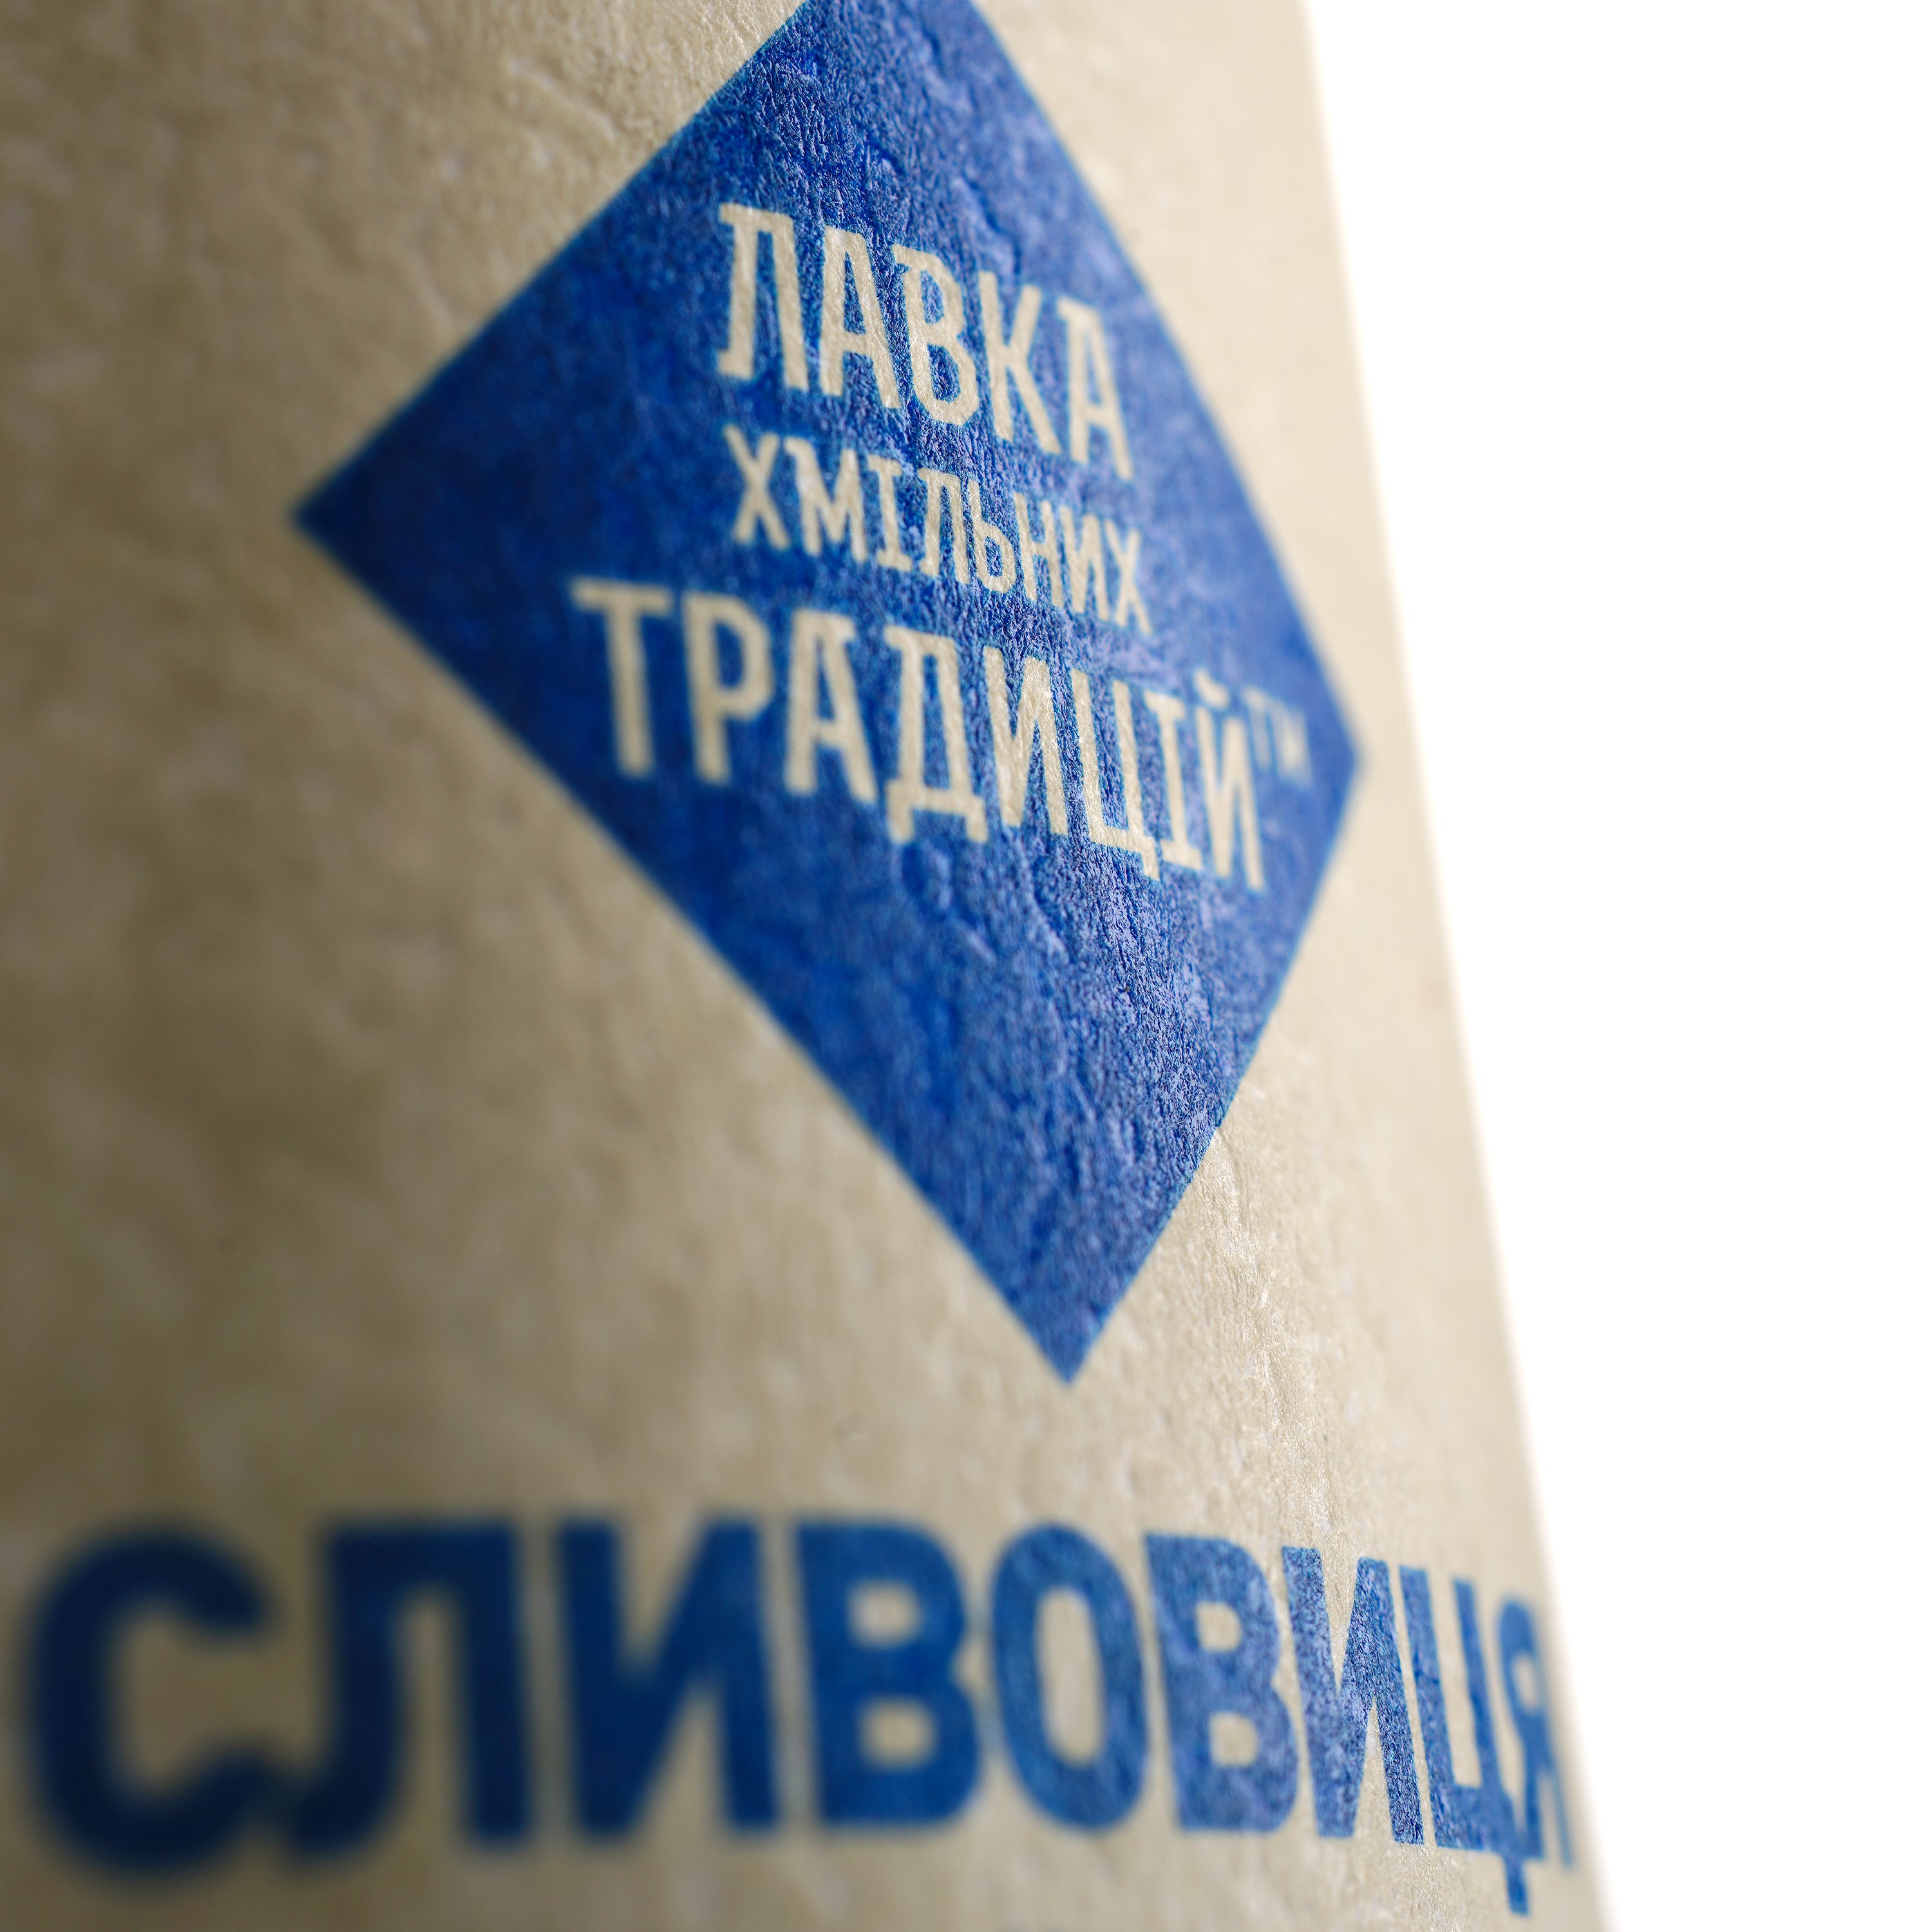 Напиток Лавка хмільних традицій Сливовица Украинская, 40%, 0,5 л (637179) - фото 3